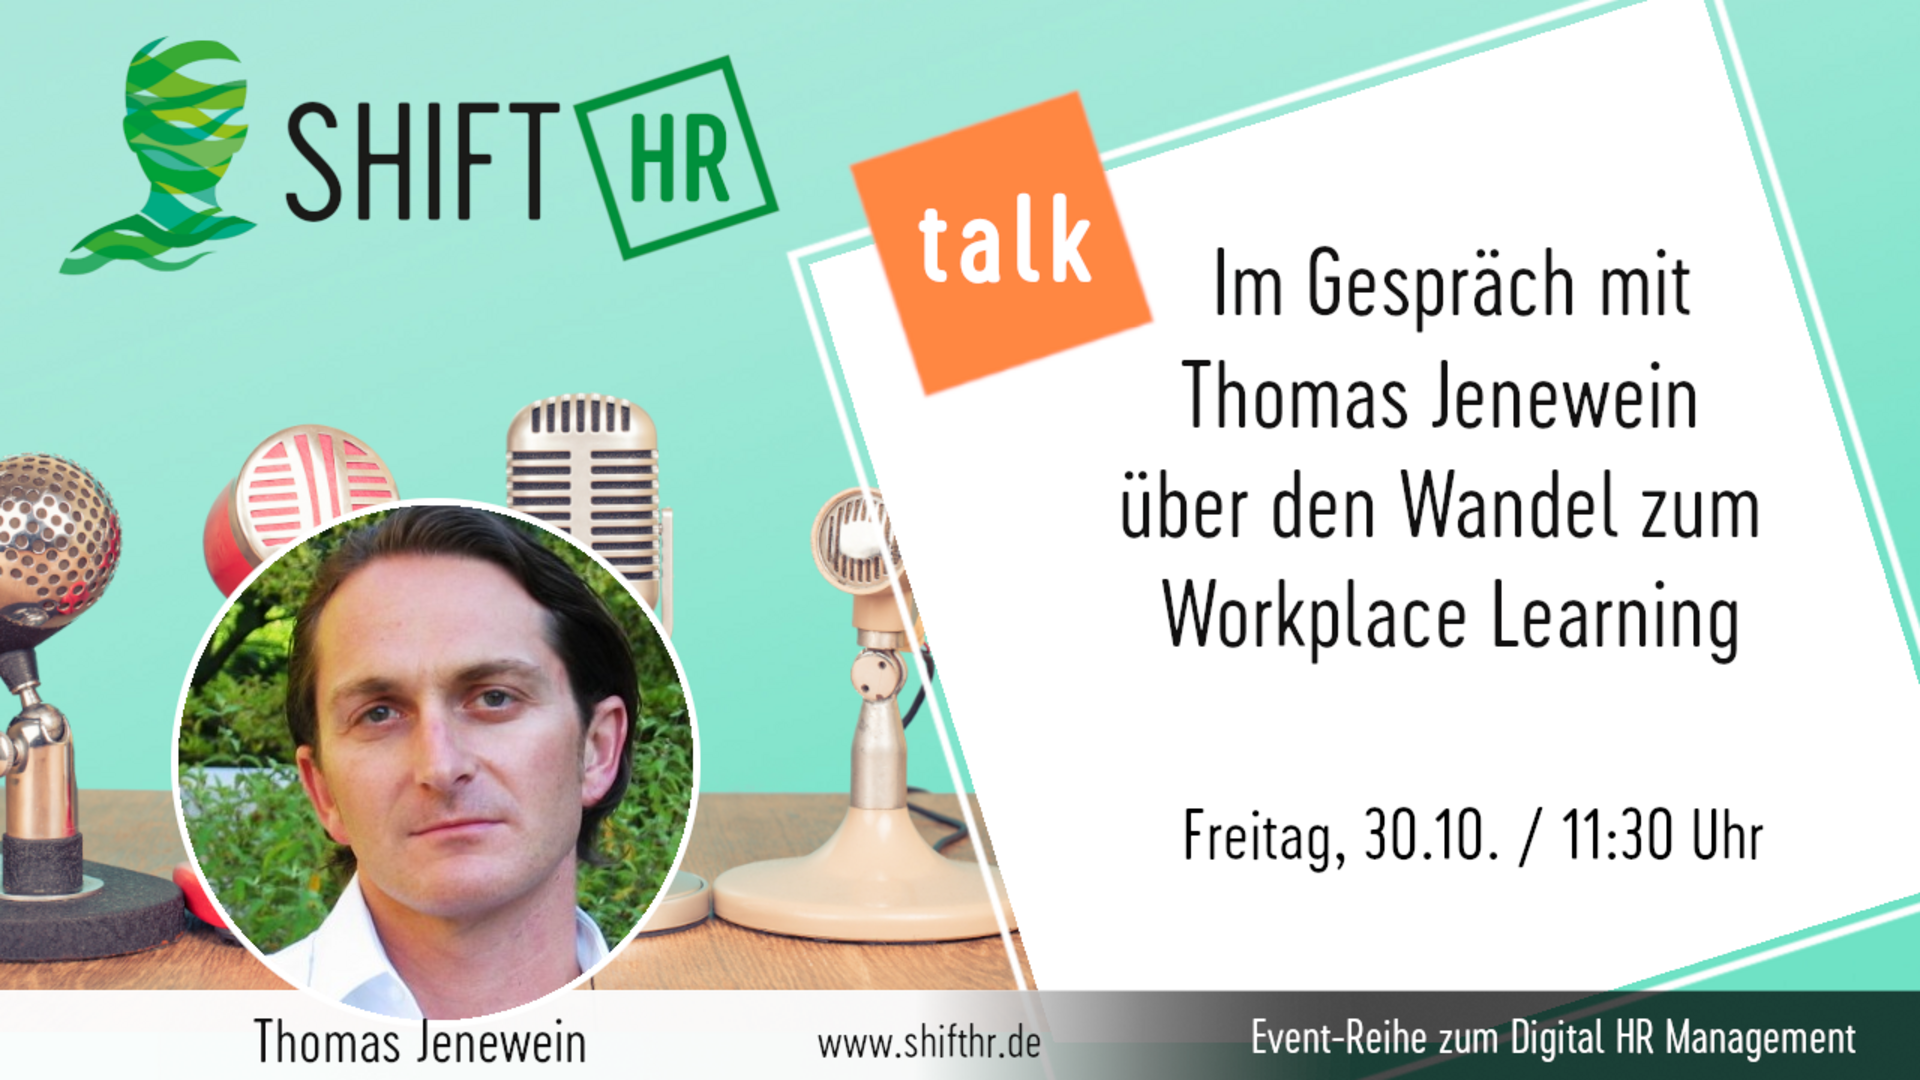 Im Gespräch mit Thomas Jenewein über den Wandel zum Workplace Learning